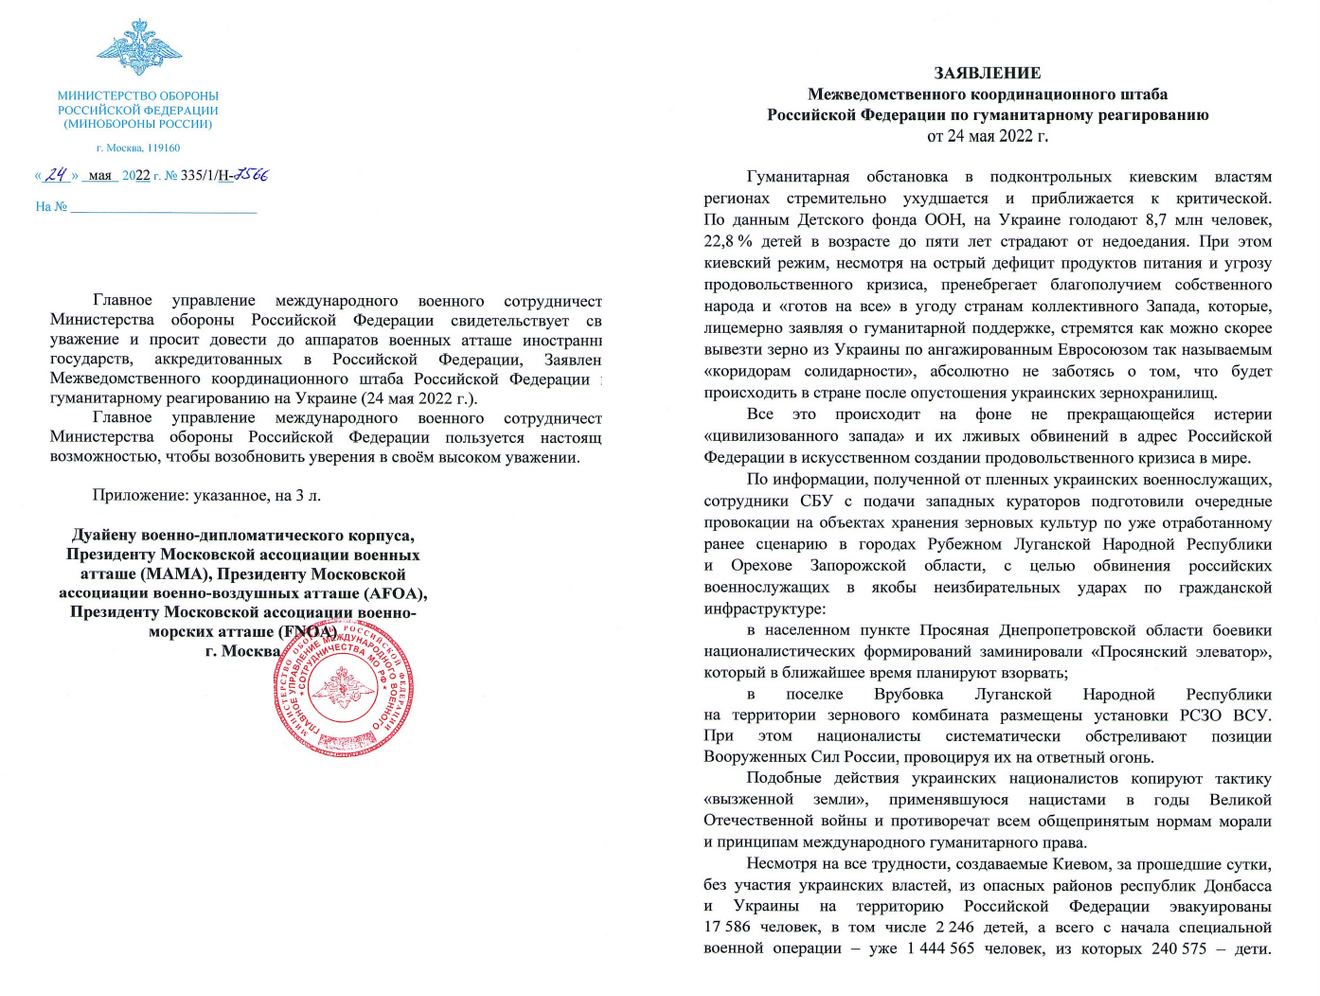 Минобороны РФ составило письмо с фейками о ситуации в Украине